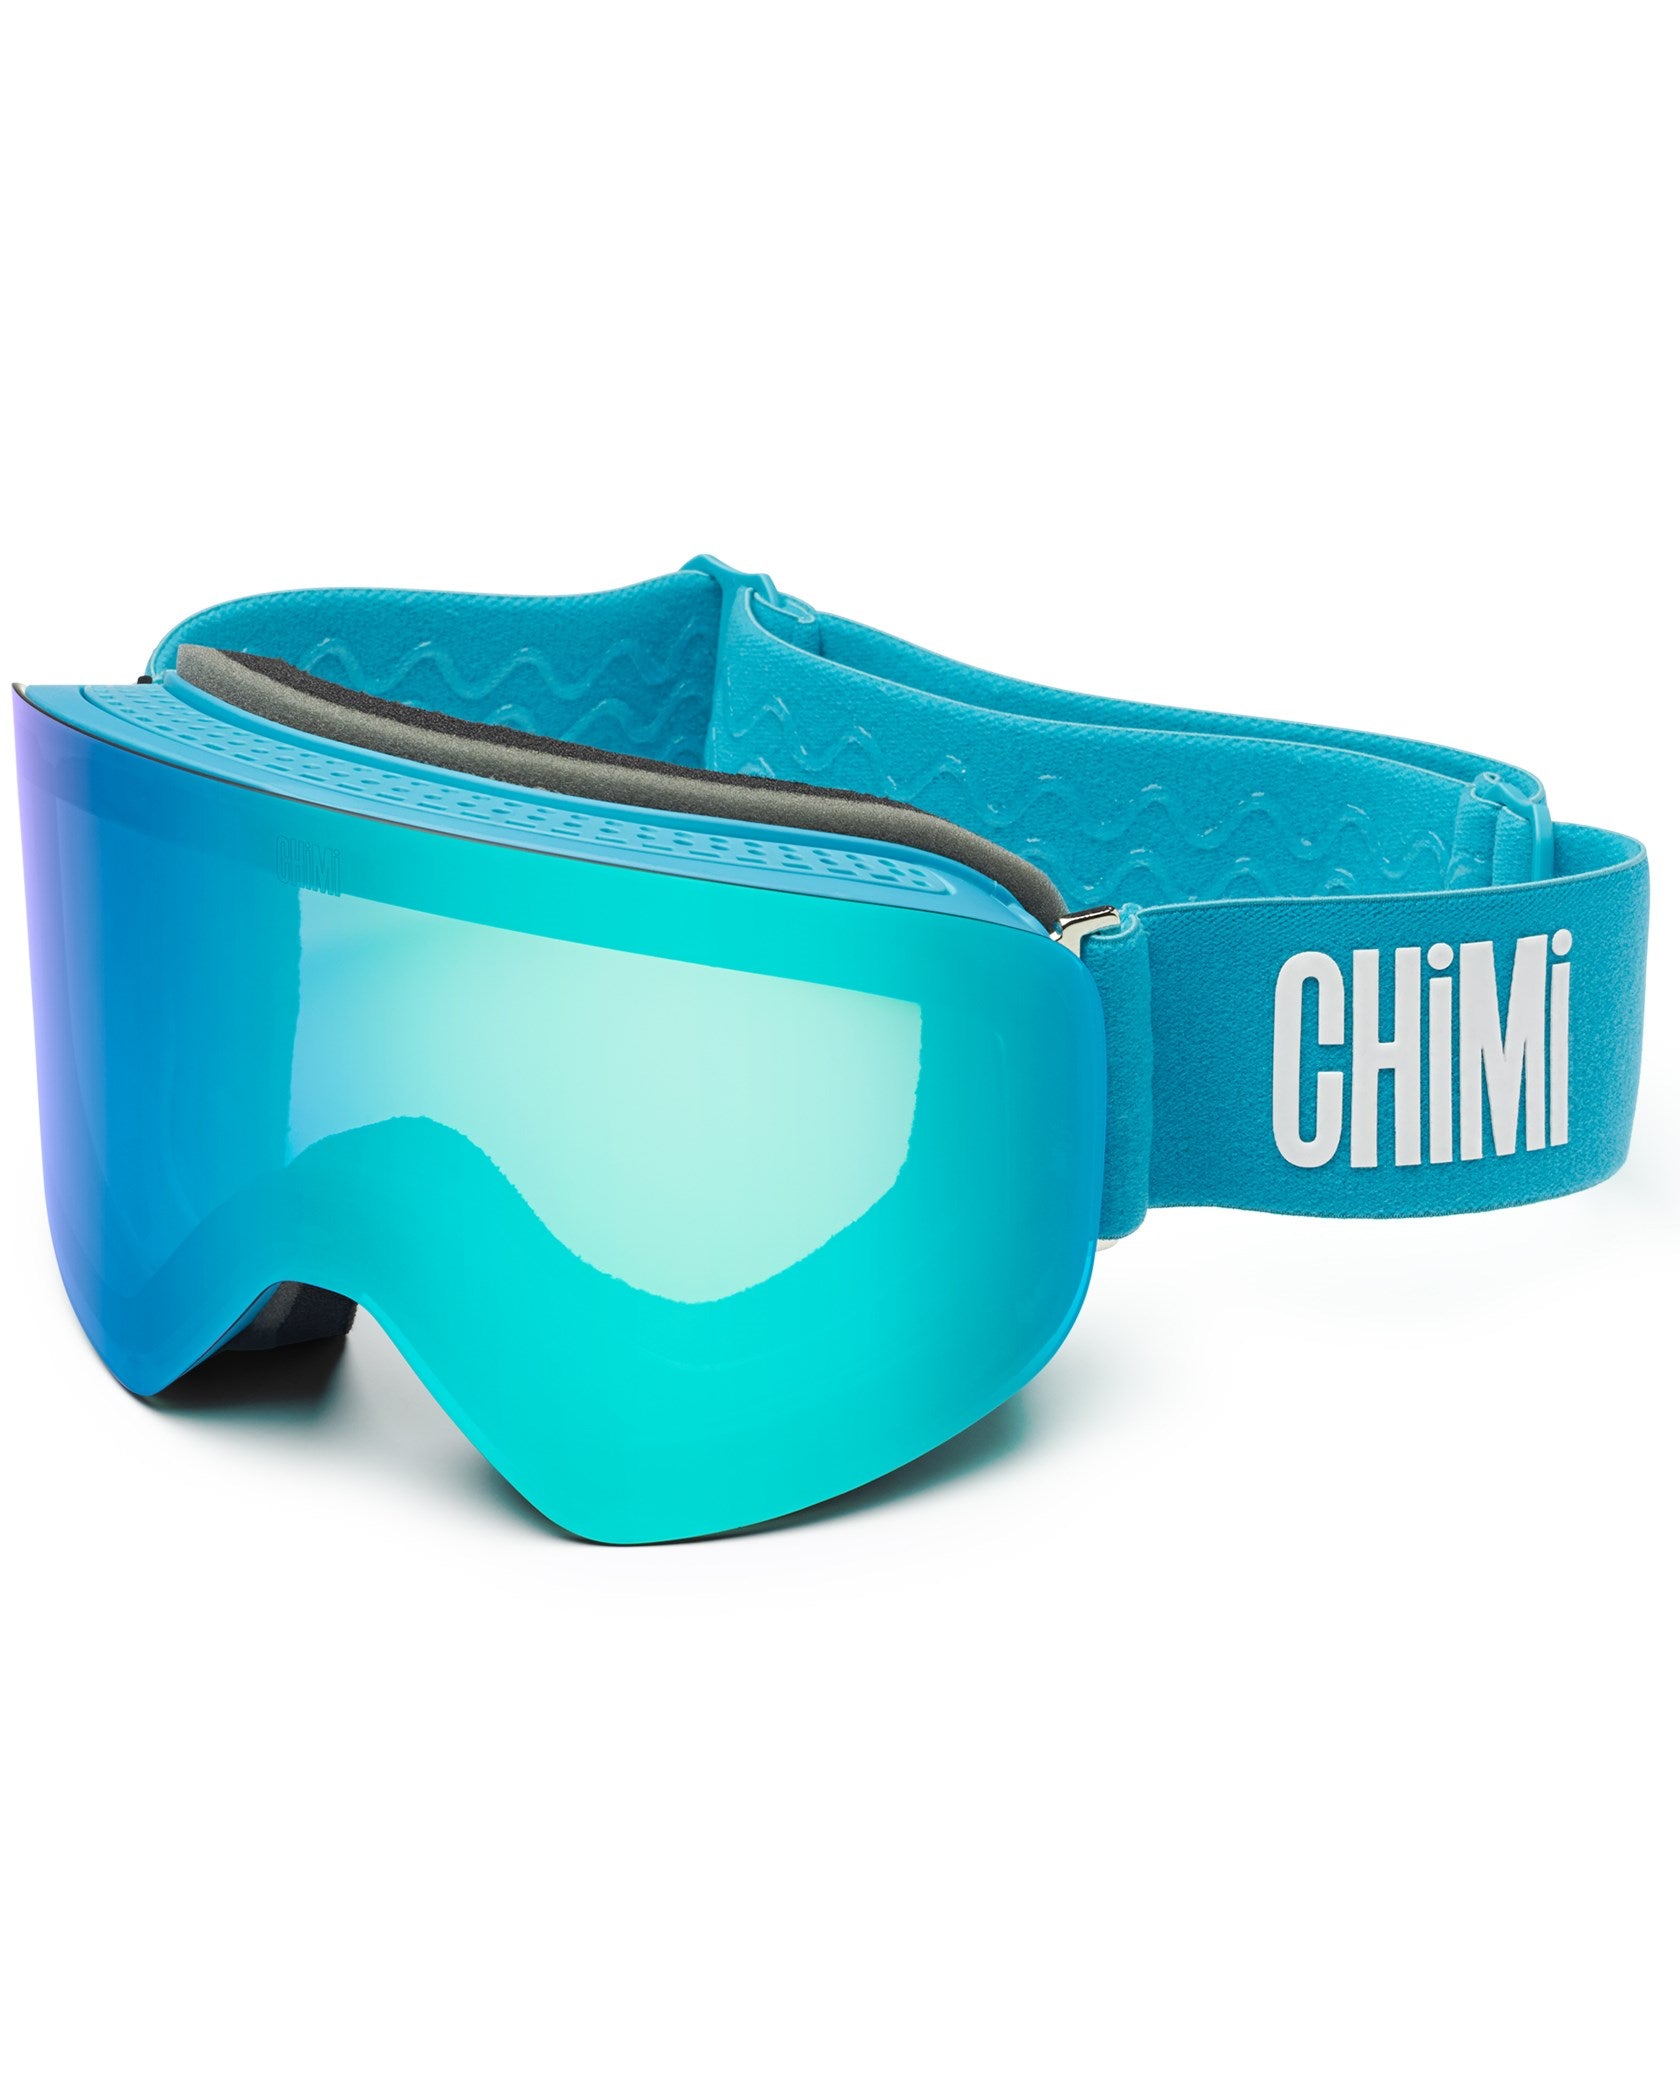 Chimi | Ski Goggles / Aqua